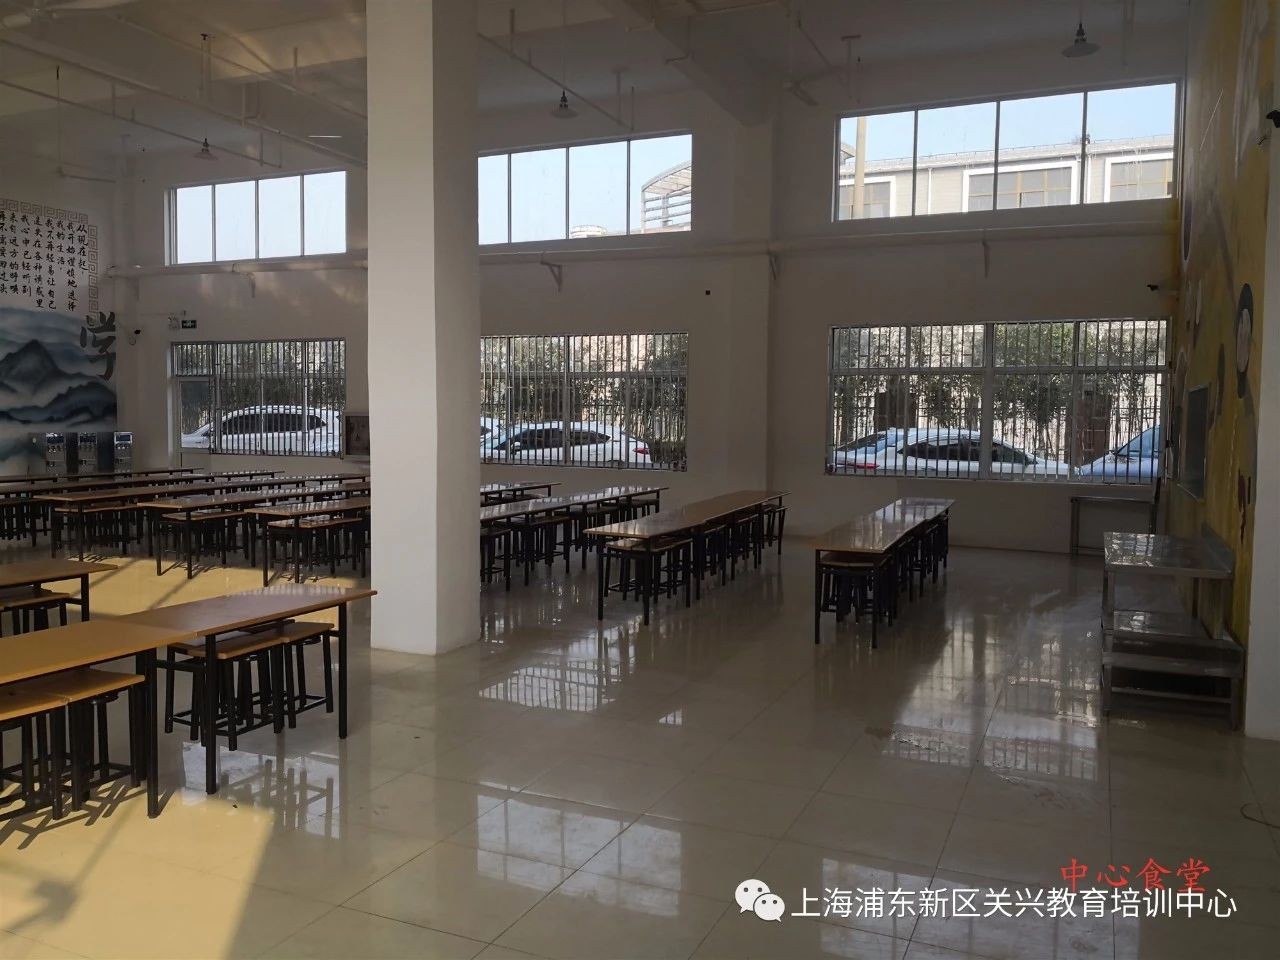 解读上海浦东新区关兴教育培训中心